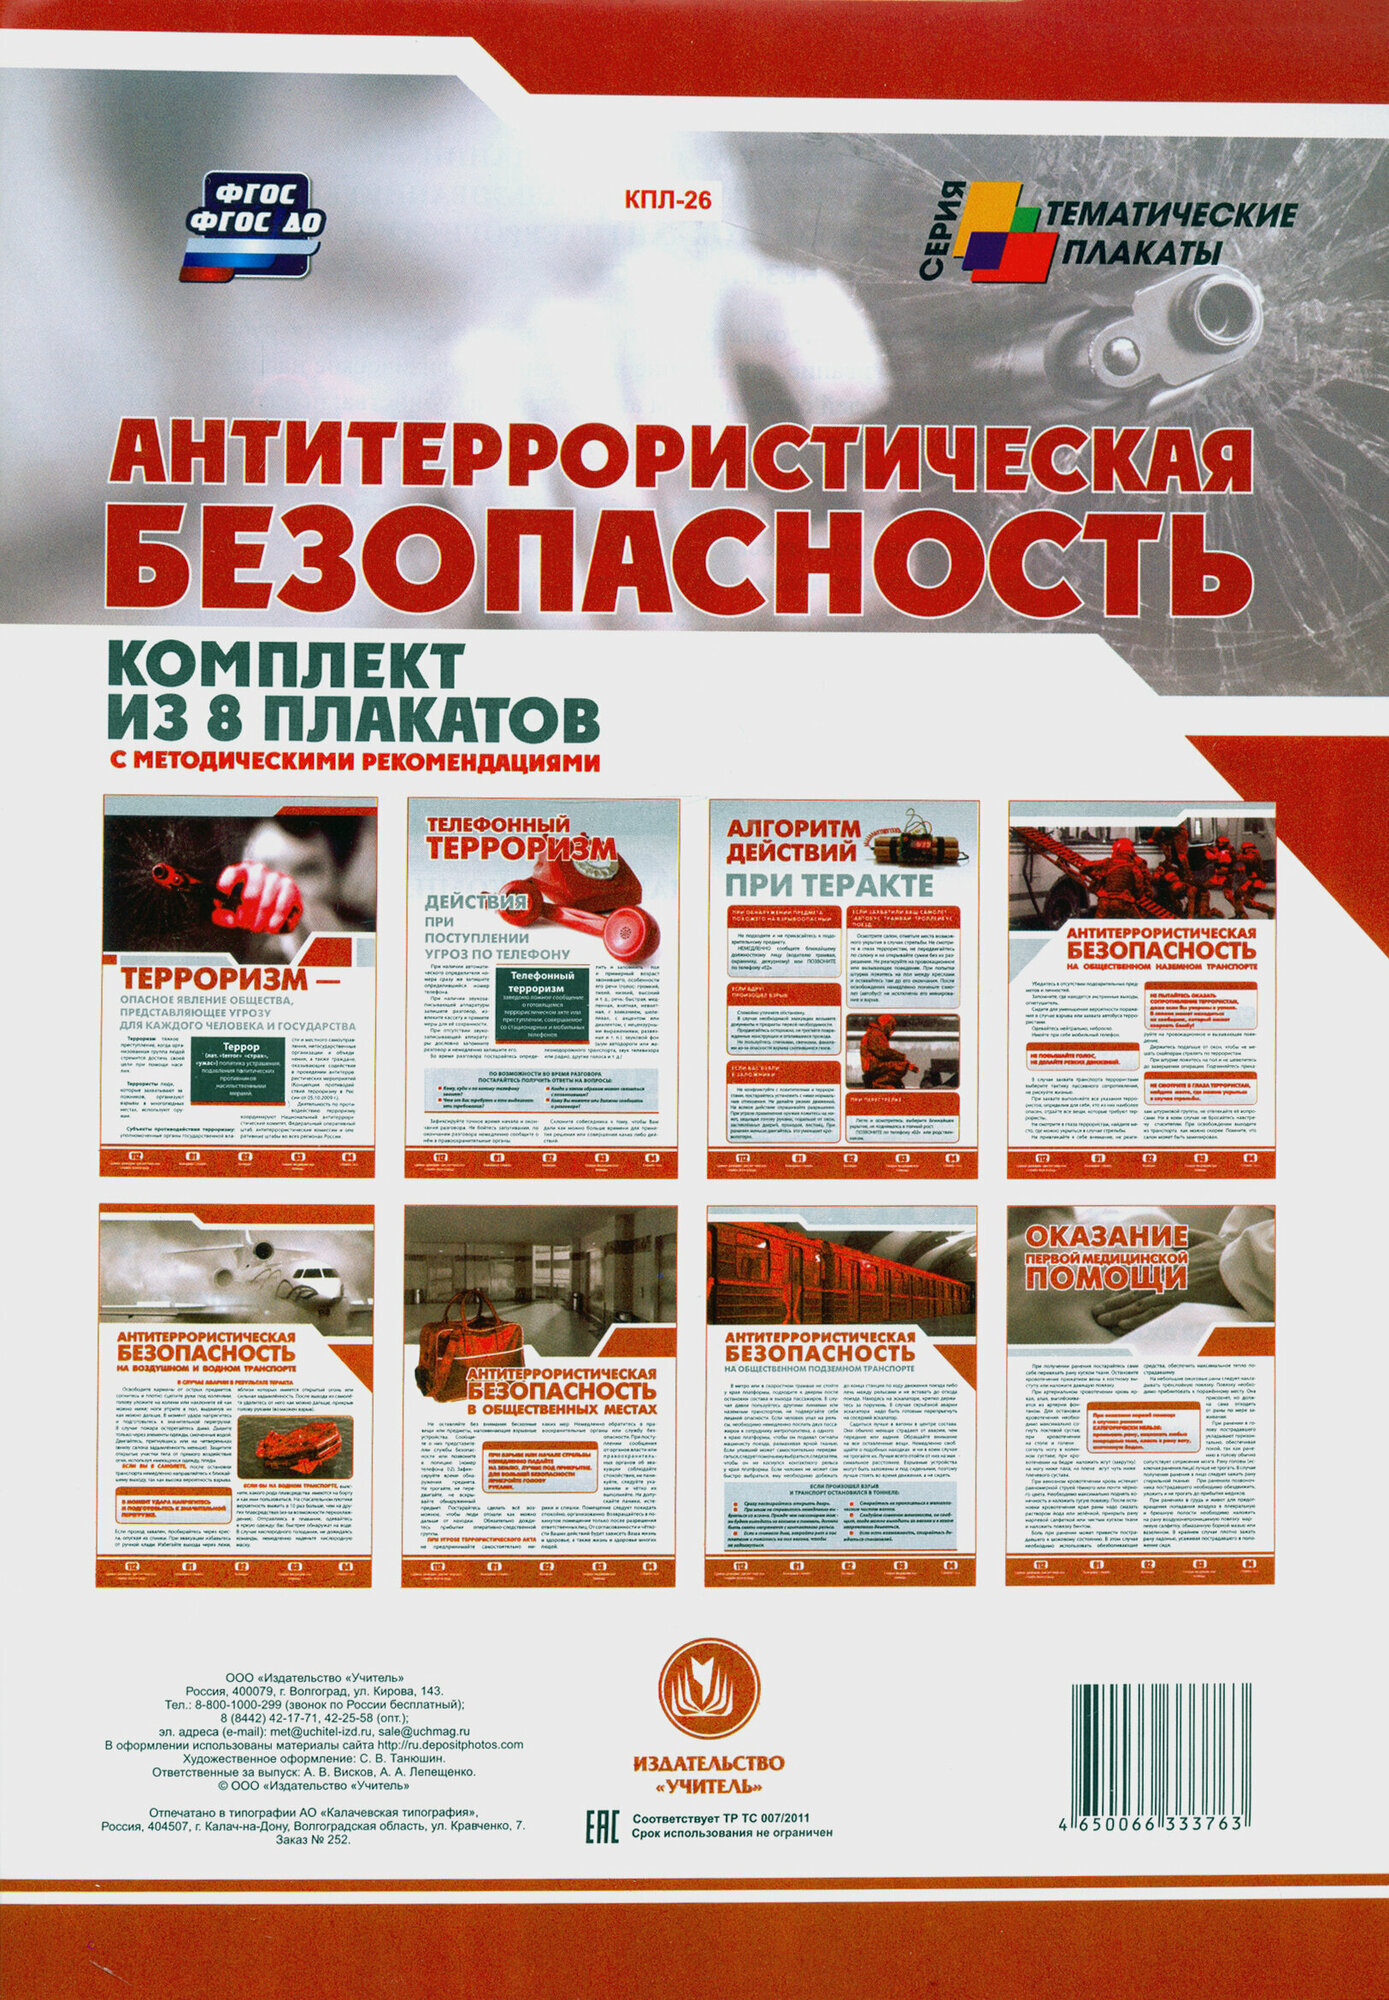 Комплект плакатов "Антитеррористическая безопасность". - фото №8